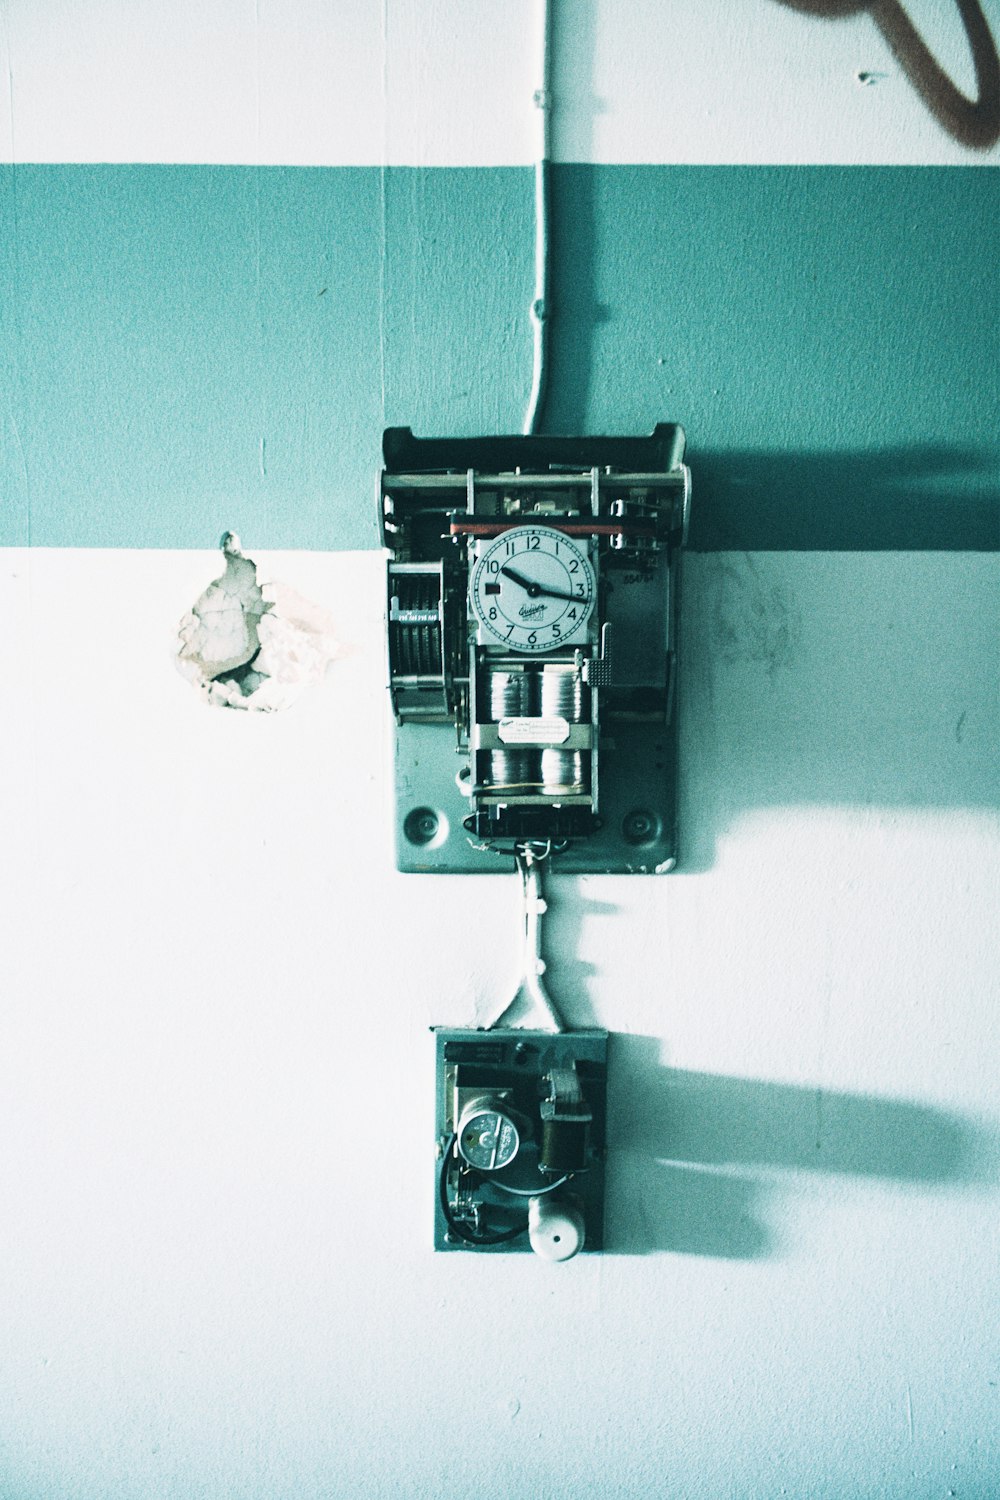 relógio analógico de parede preto e cinza pendurado na parede